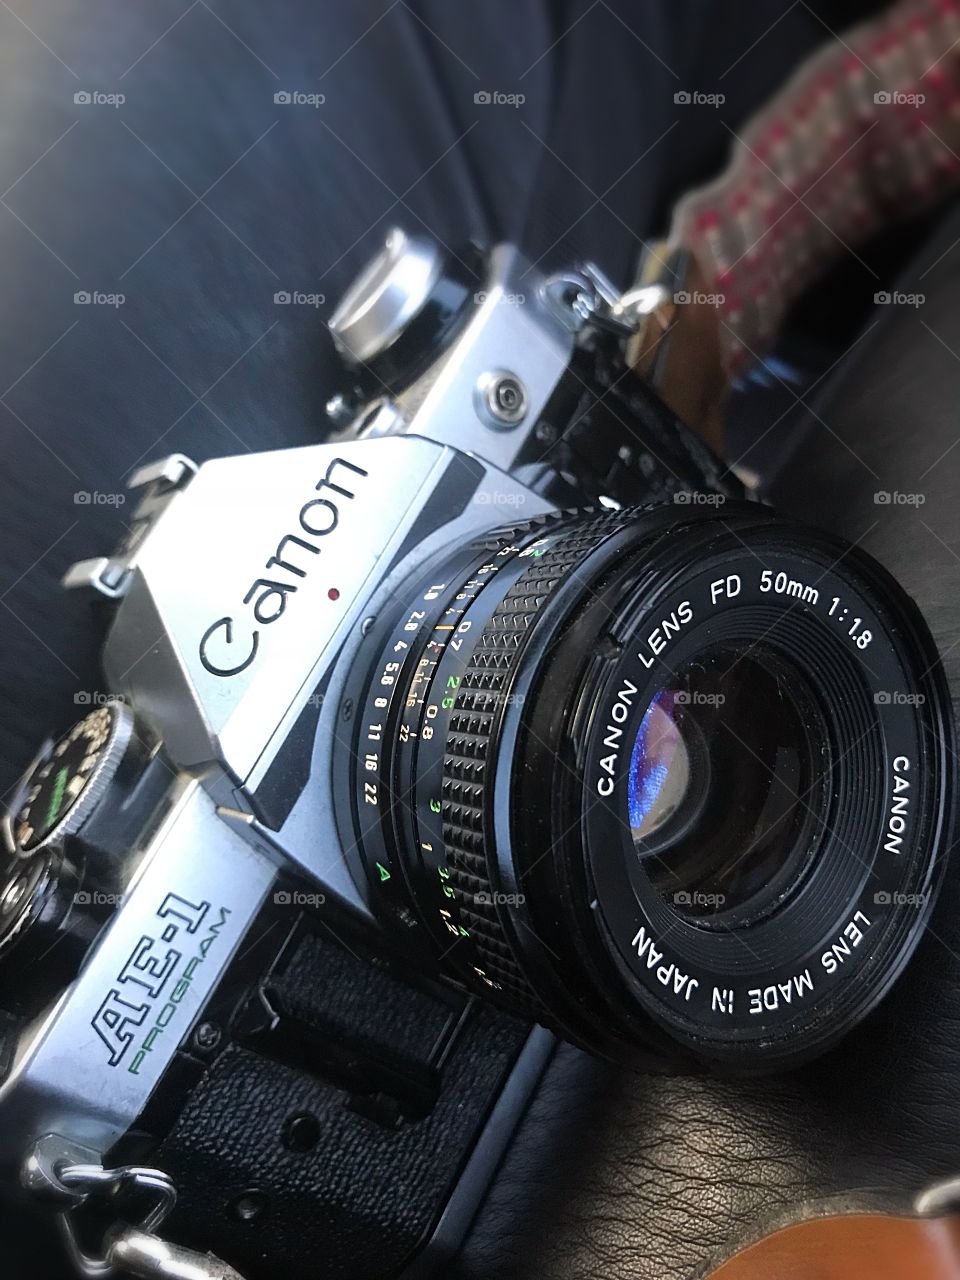 My canon film camera 